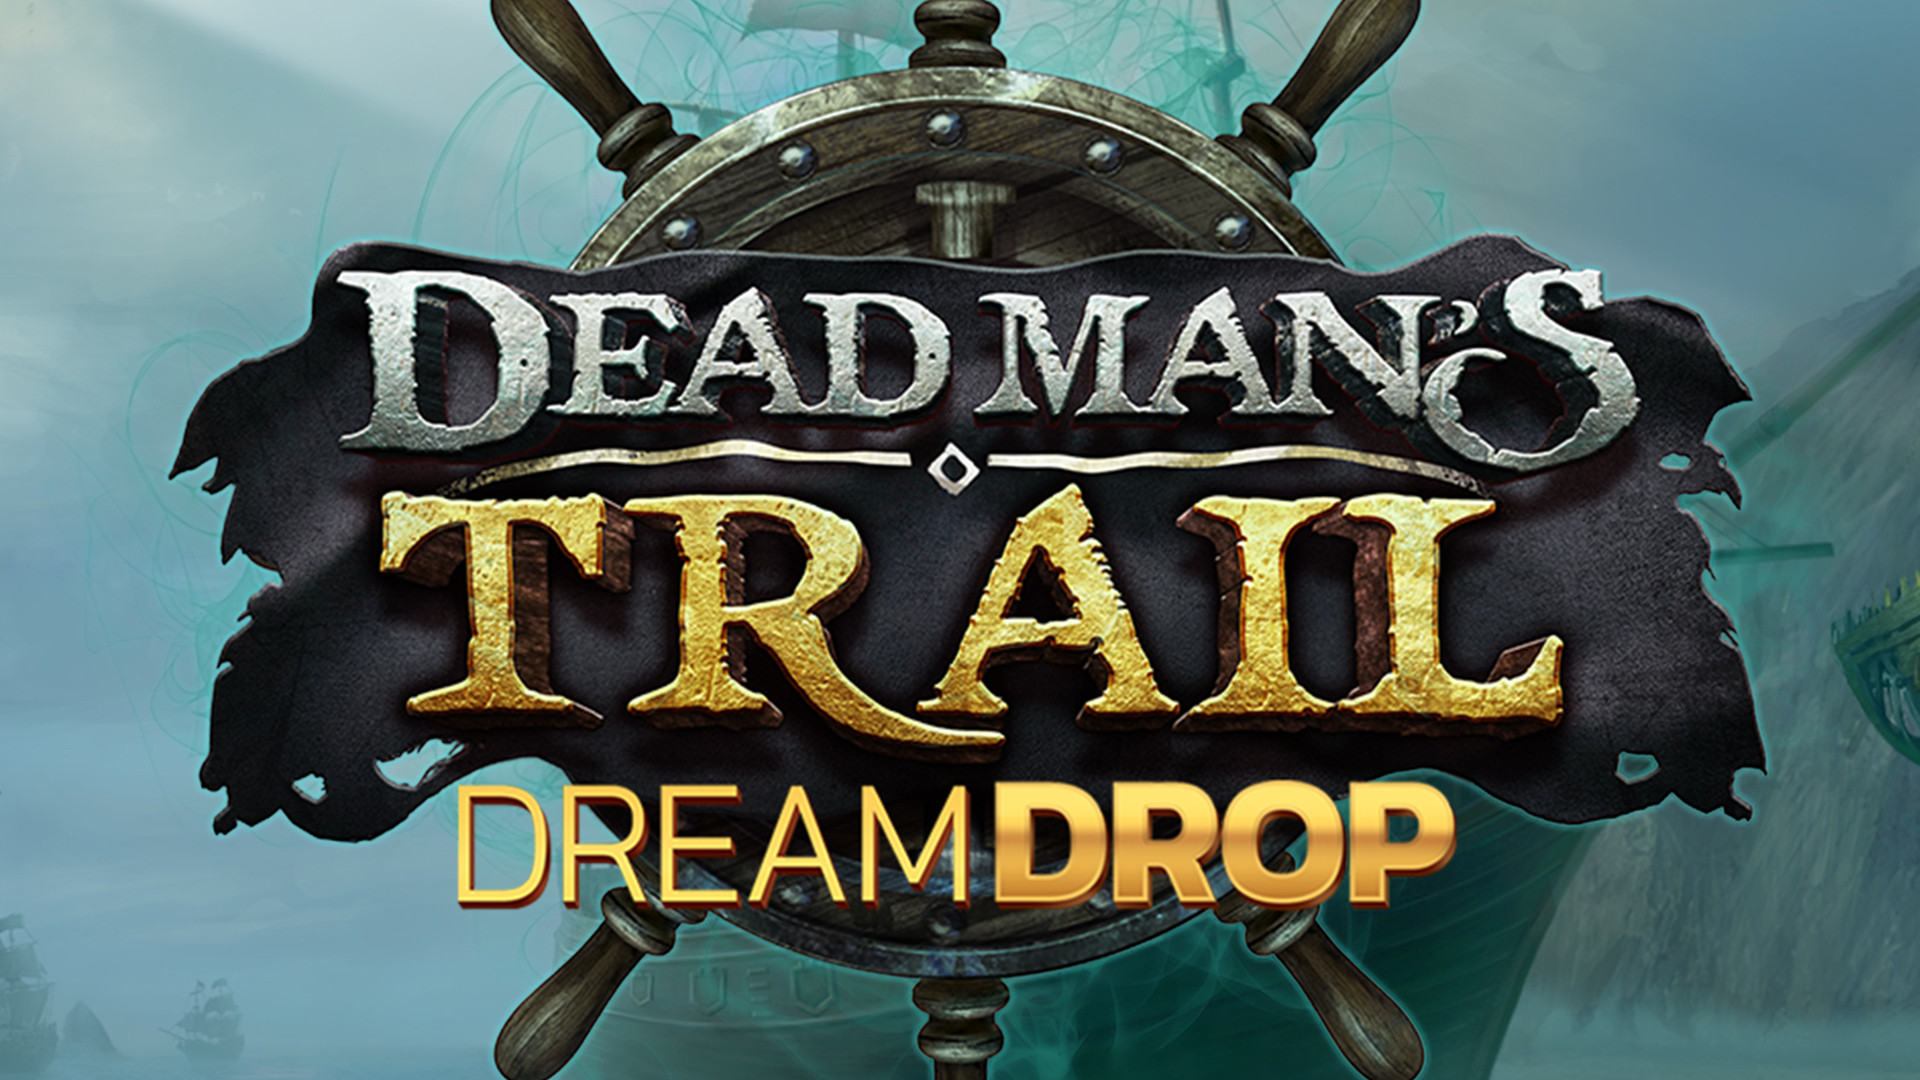 Dead Man's Trail Dream Drop